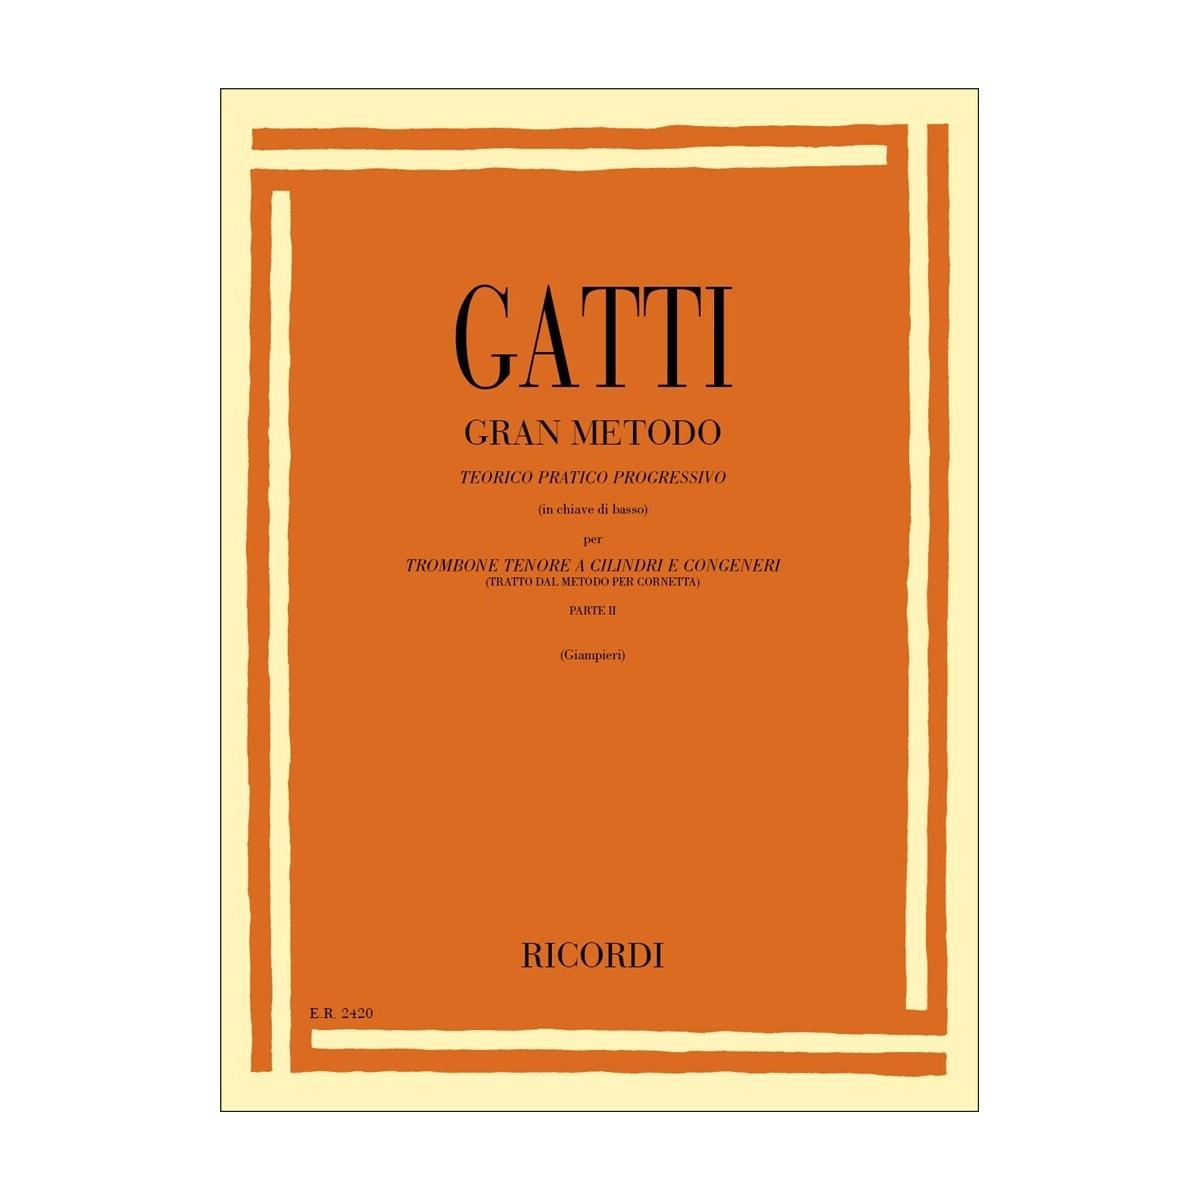 Gatti Gran Metodo Teorico Pratico Progressivo  per trombone Parte II